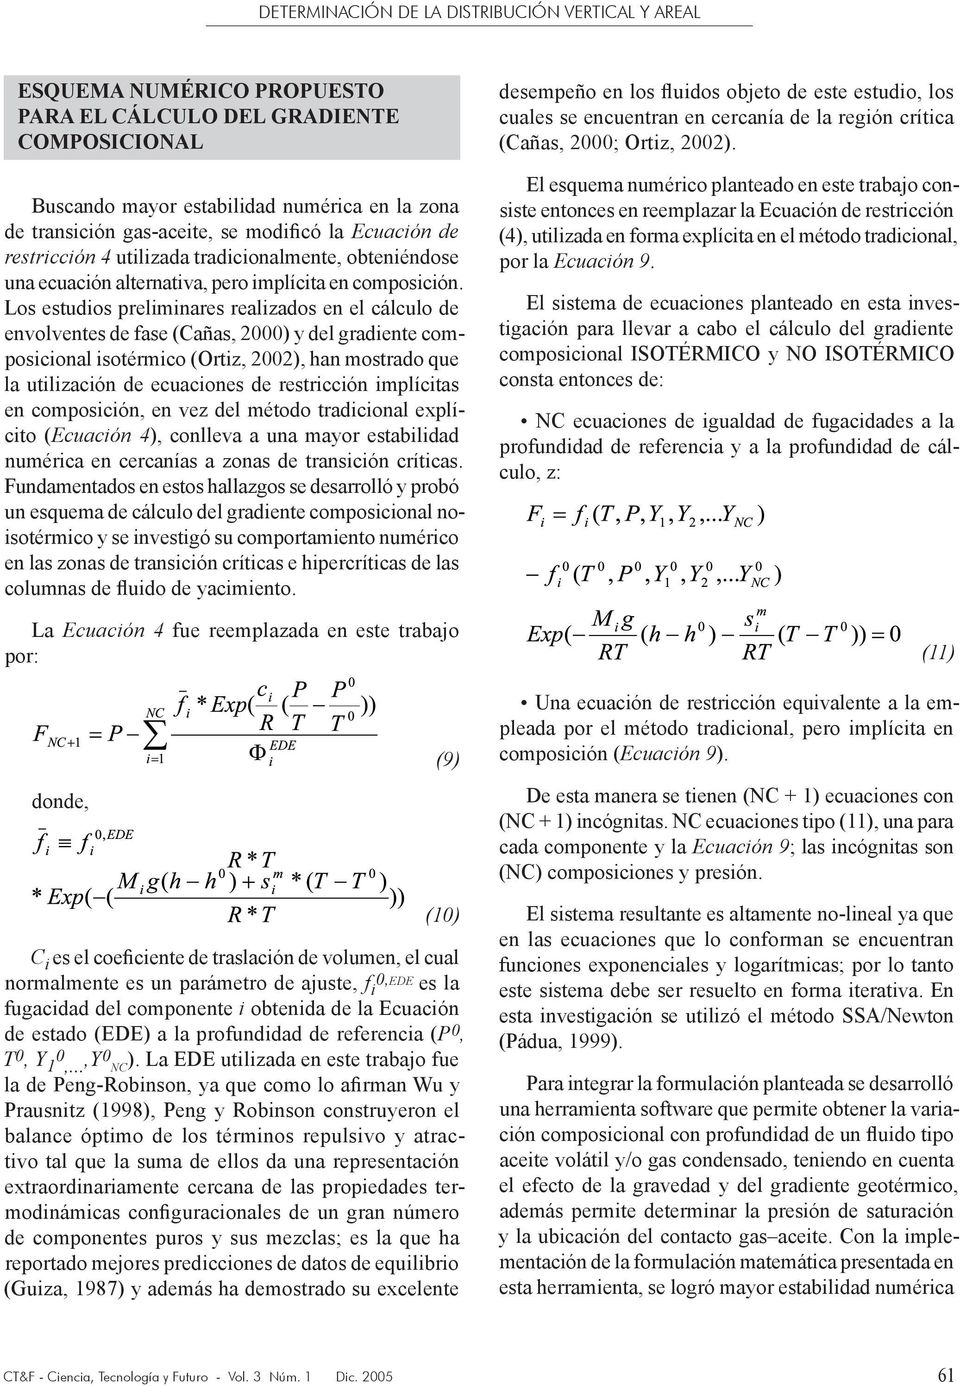 Los estudios preliminares realizados en el cálculo de envolventes de fase (Cañas, 2000) y del gradiente composicional isotérmico (Ortiz, 2002), han mostrado que la utilización de ecuaciones de